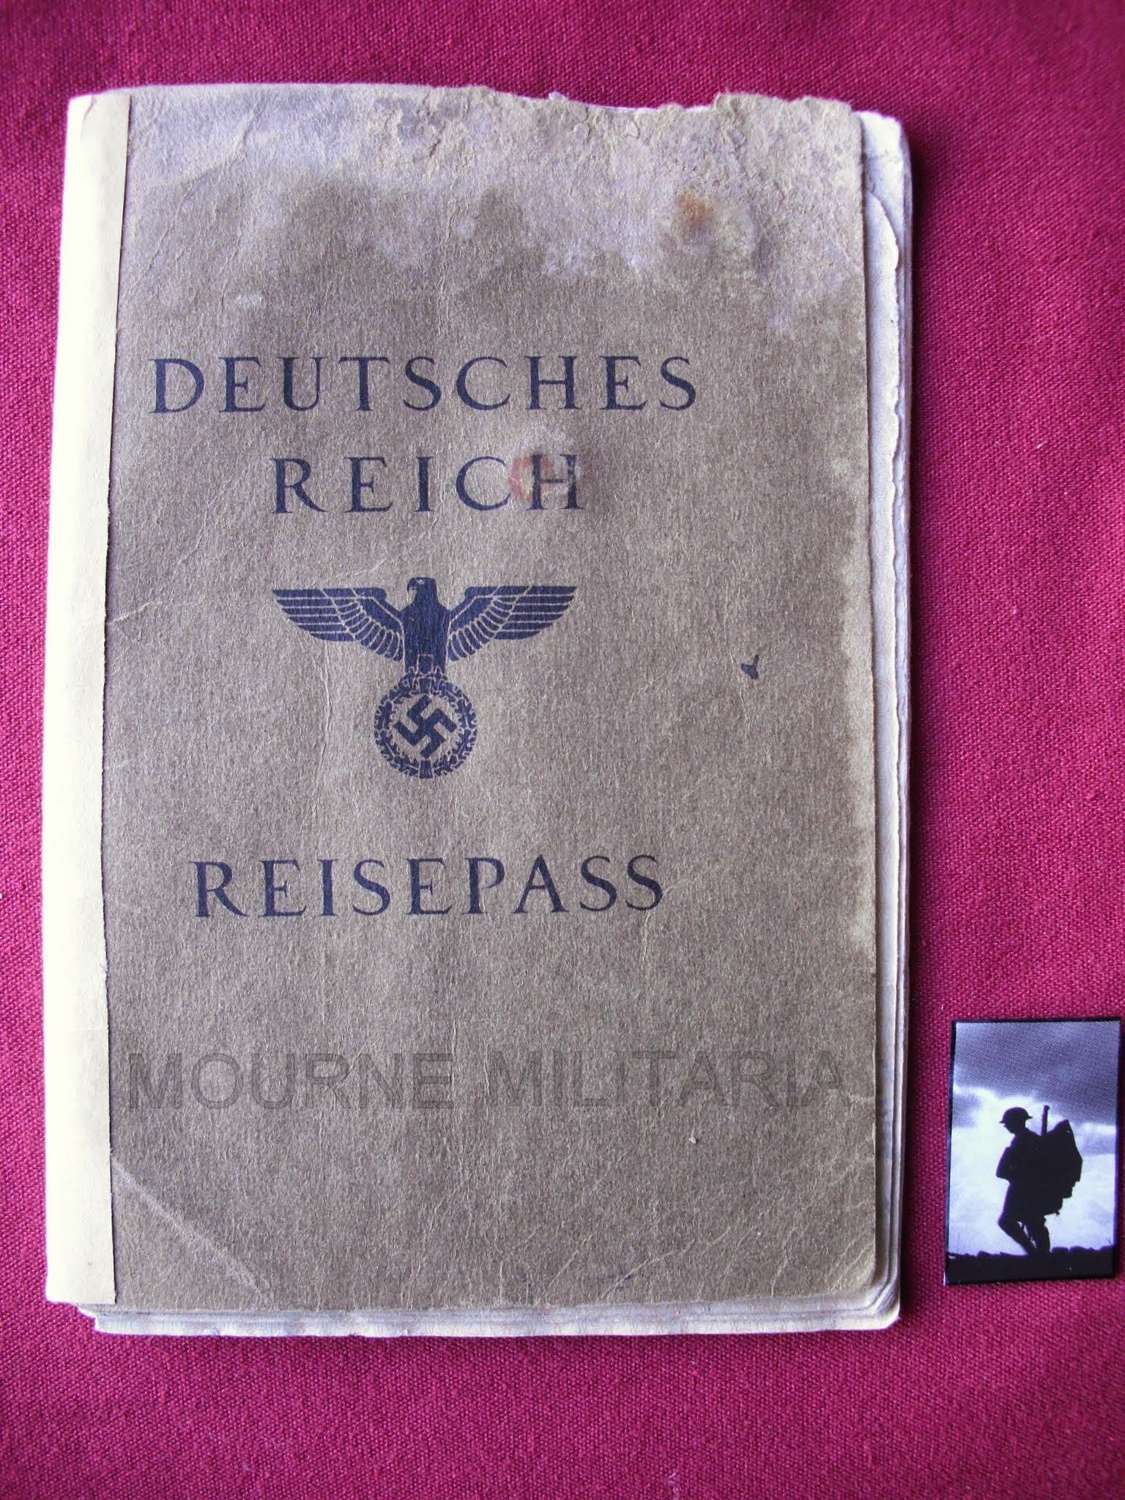 Reisepass 'Passport' of Dr Arthur Lingens